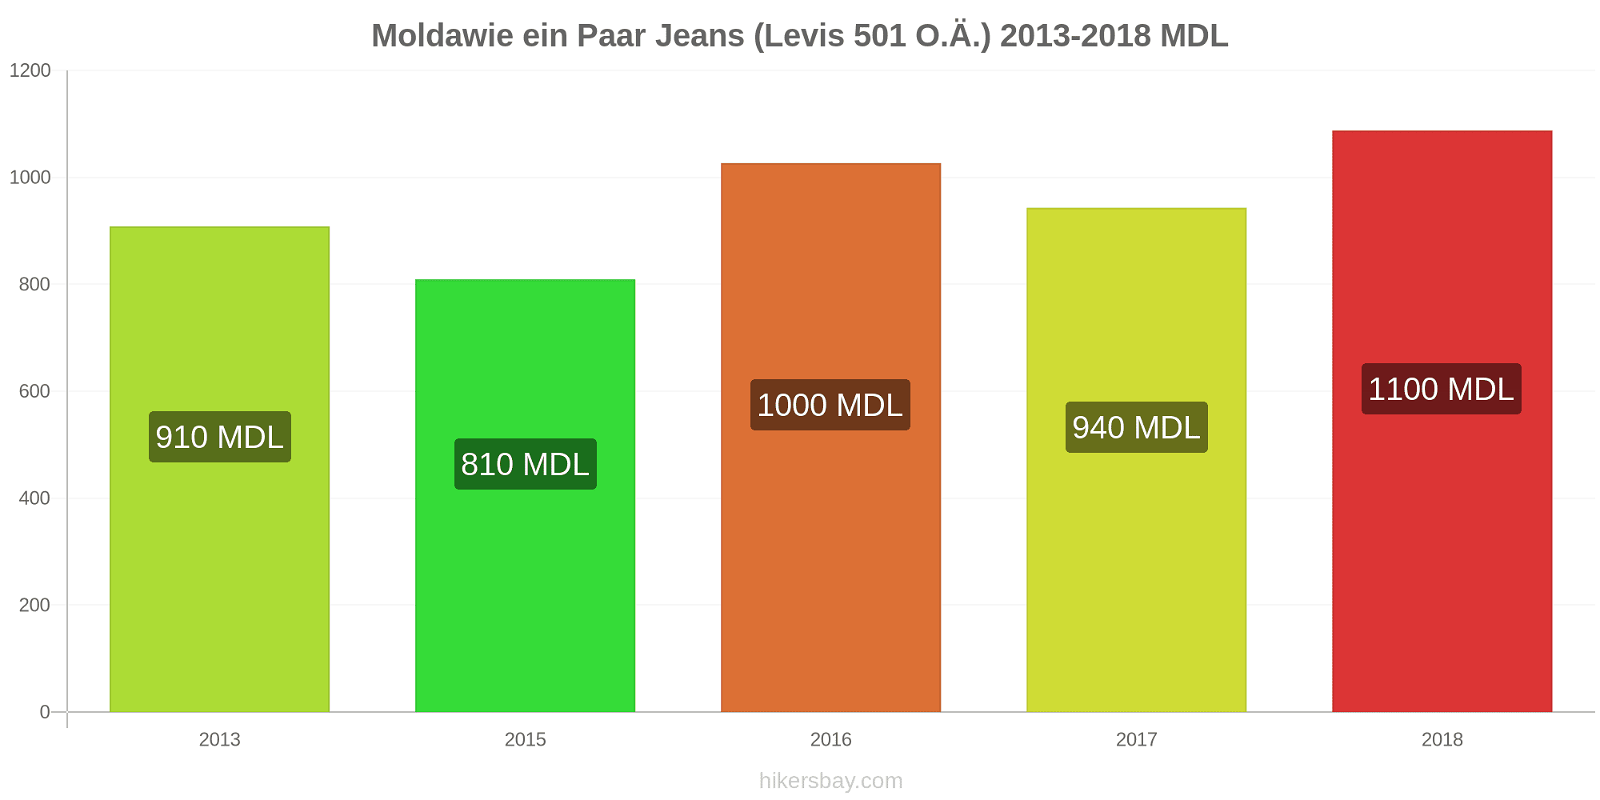 Moldawie Preisänderungen 1 Paar Jeans (Levis 501 oder ähnlich) hikersbay.com